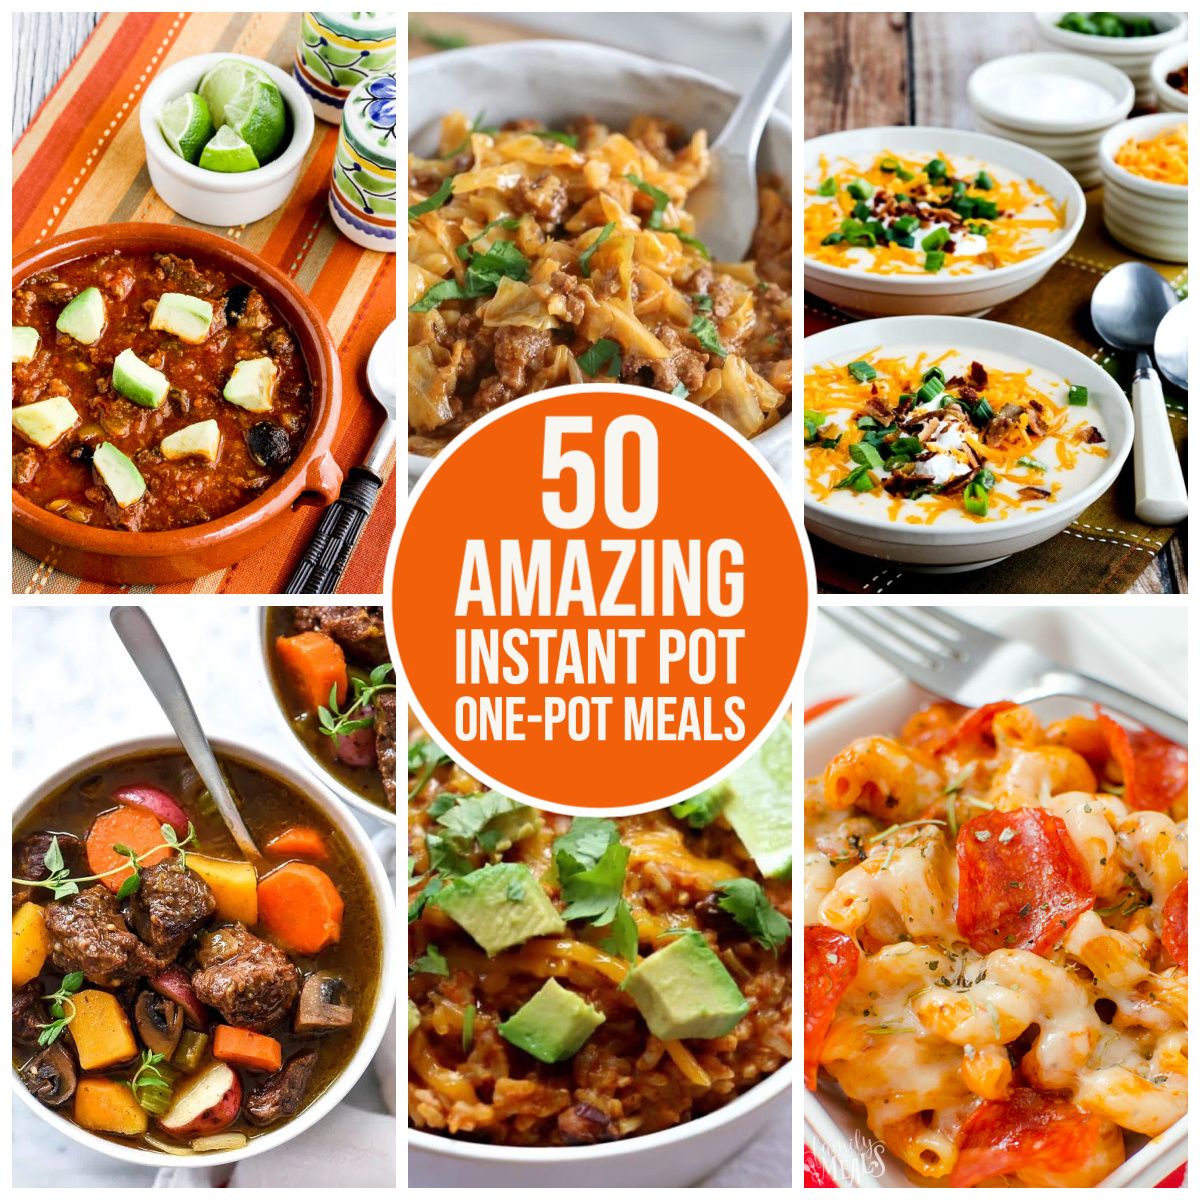 50 Amazing Instant Pot One-Pot Meals